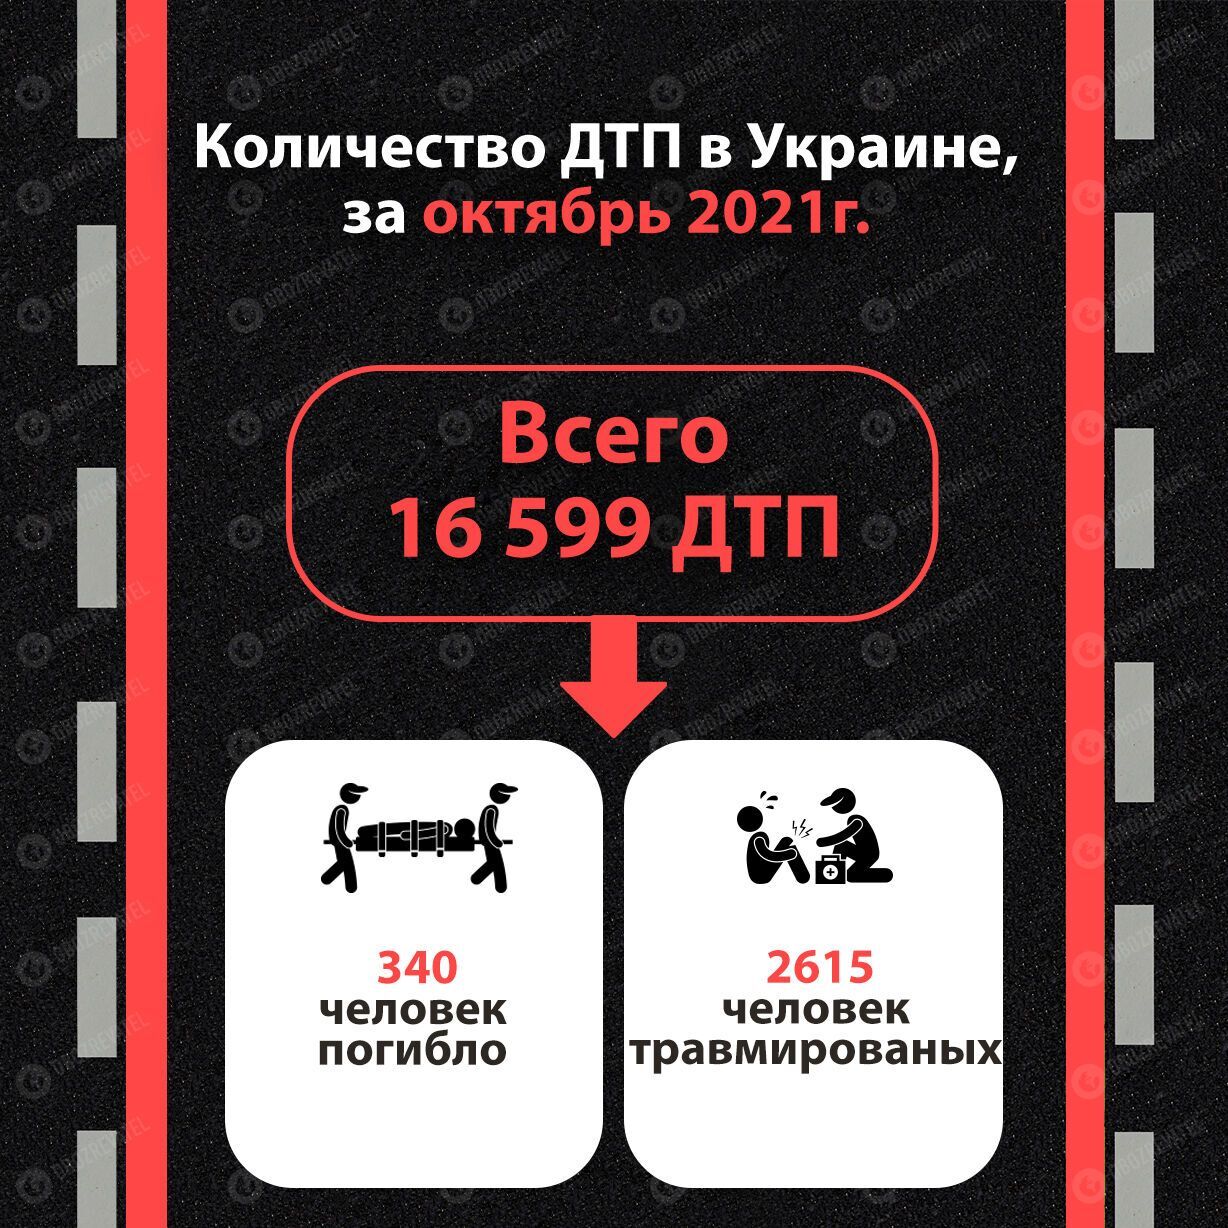 Статистика по ДТП в Украине, данные за октябрь 2021 года